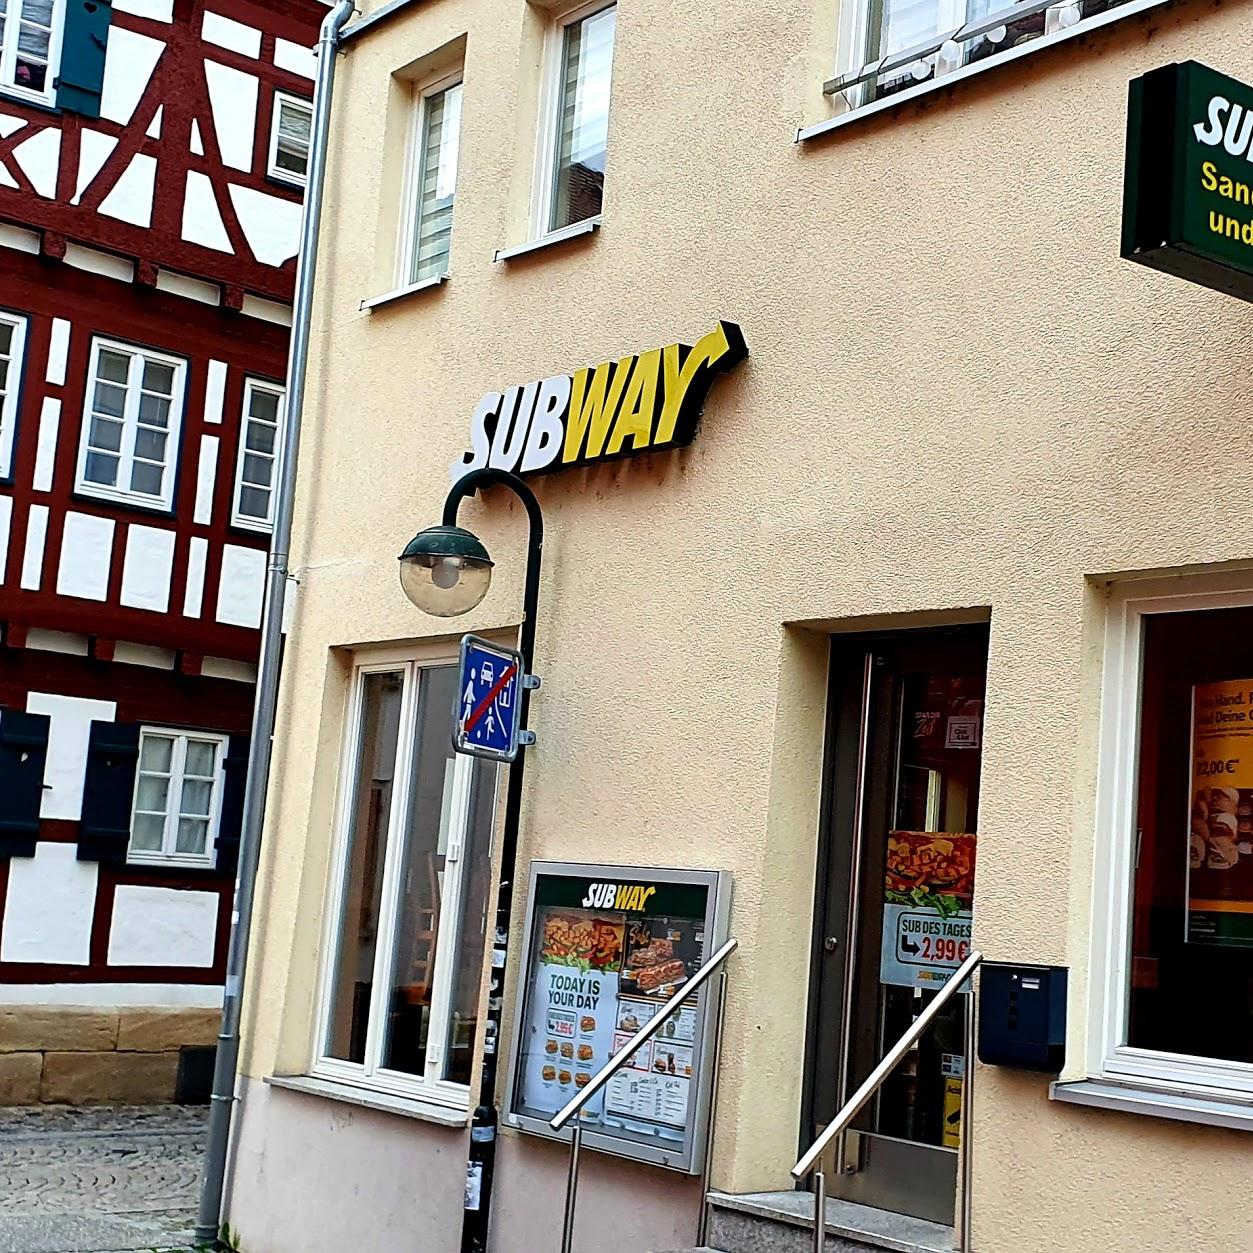 Restaurant "Subway" in Reutlingen